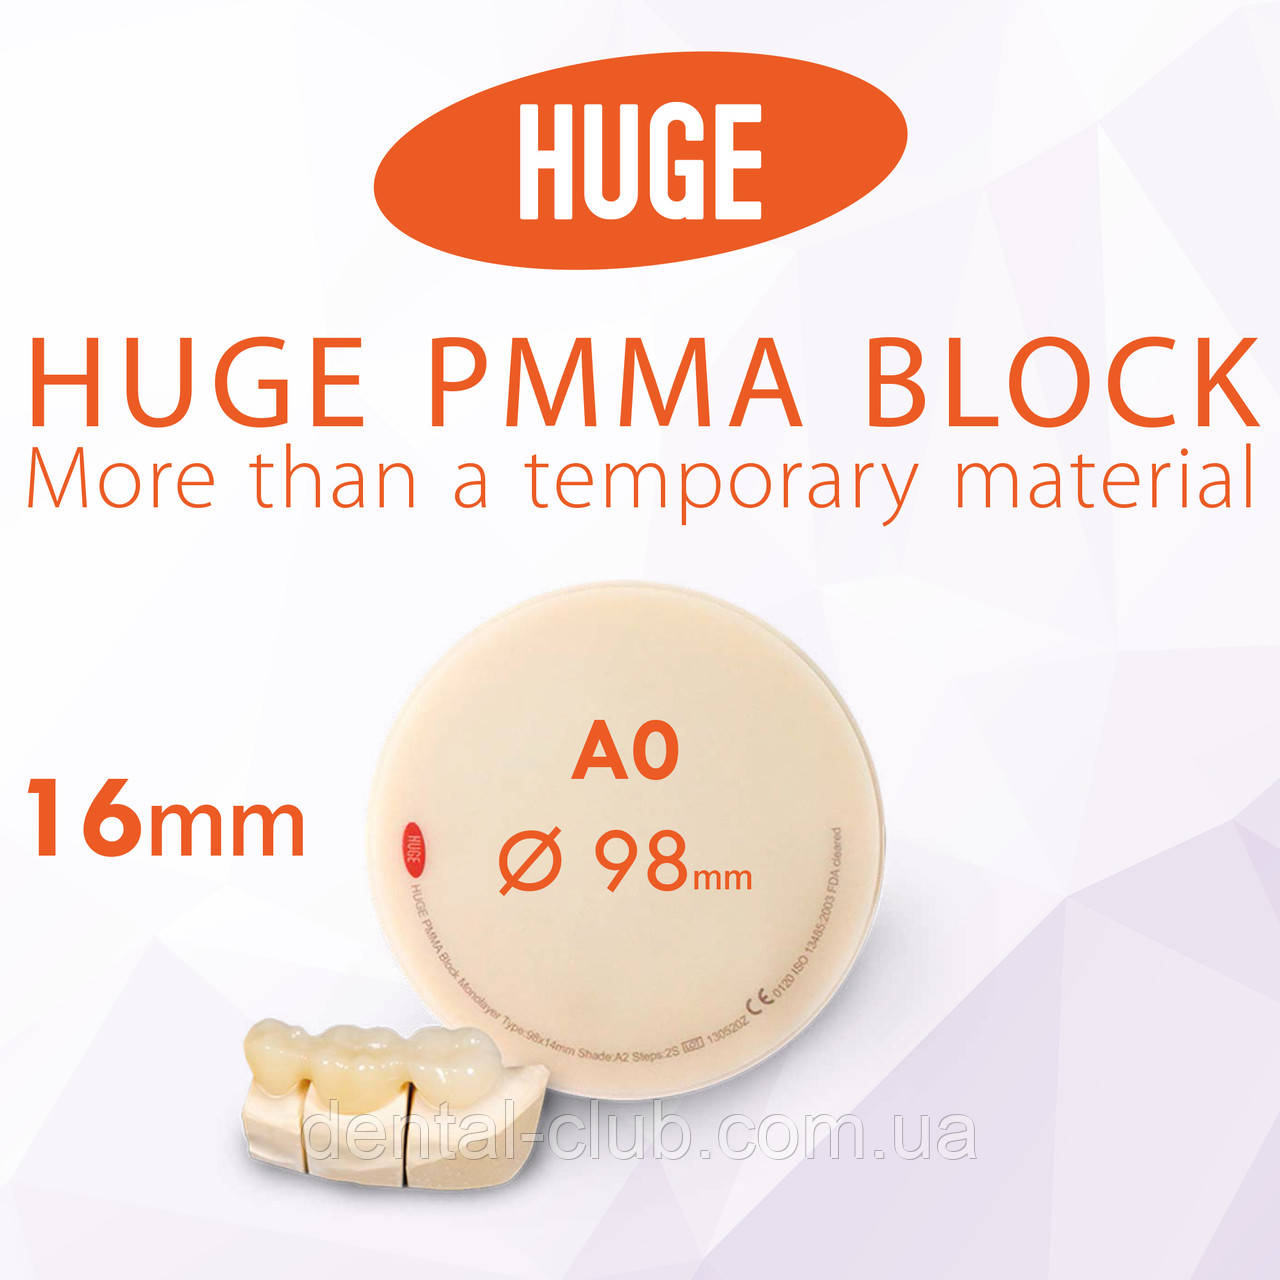 Блоки (диски) для CAD / CAM з поліметилметакрилату (PMMA) колір А0 висота заготовки 16 мм